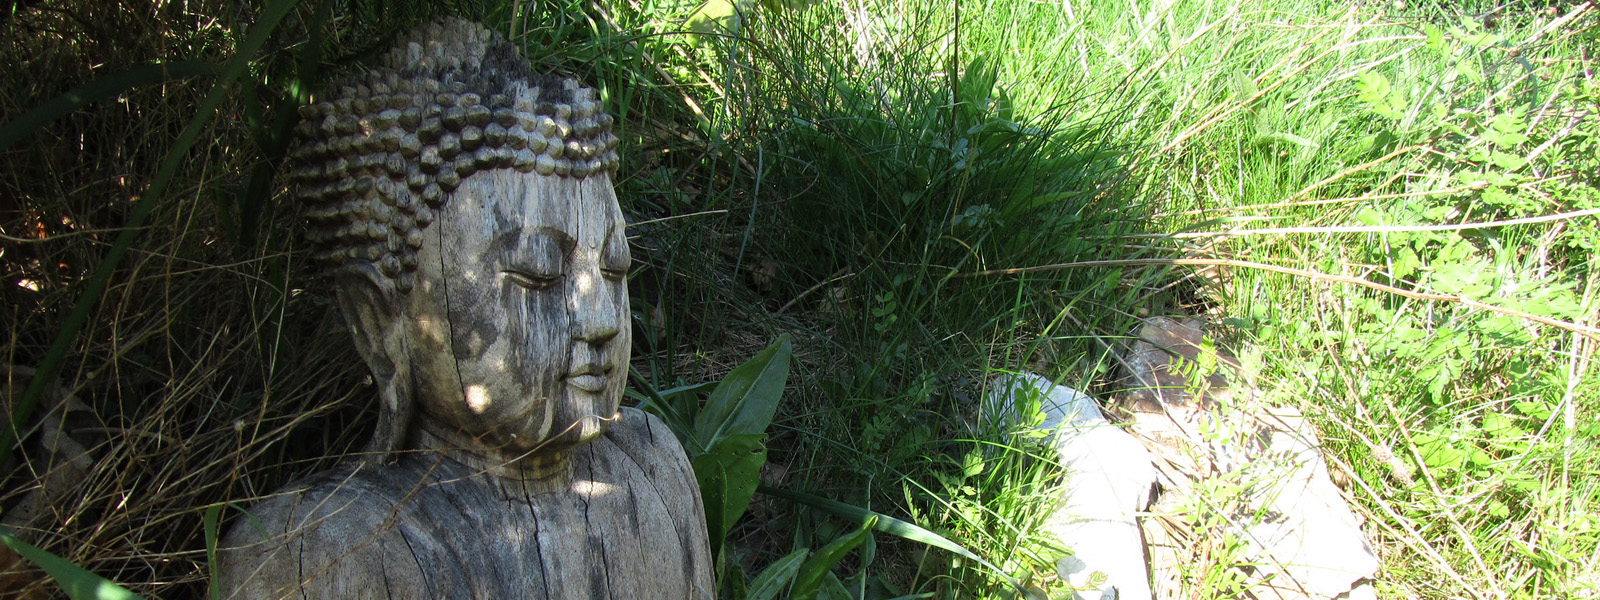 Buddha in a field